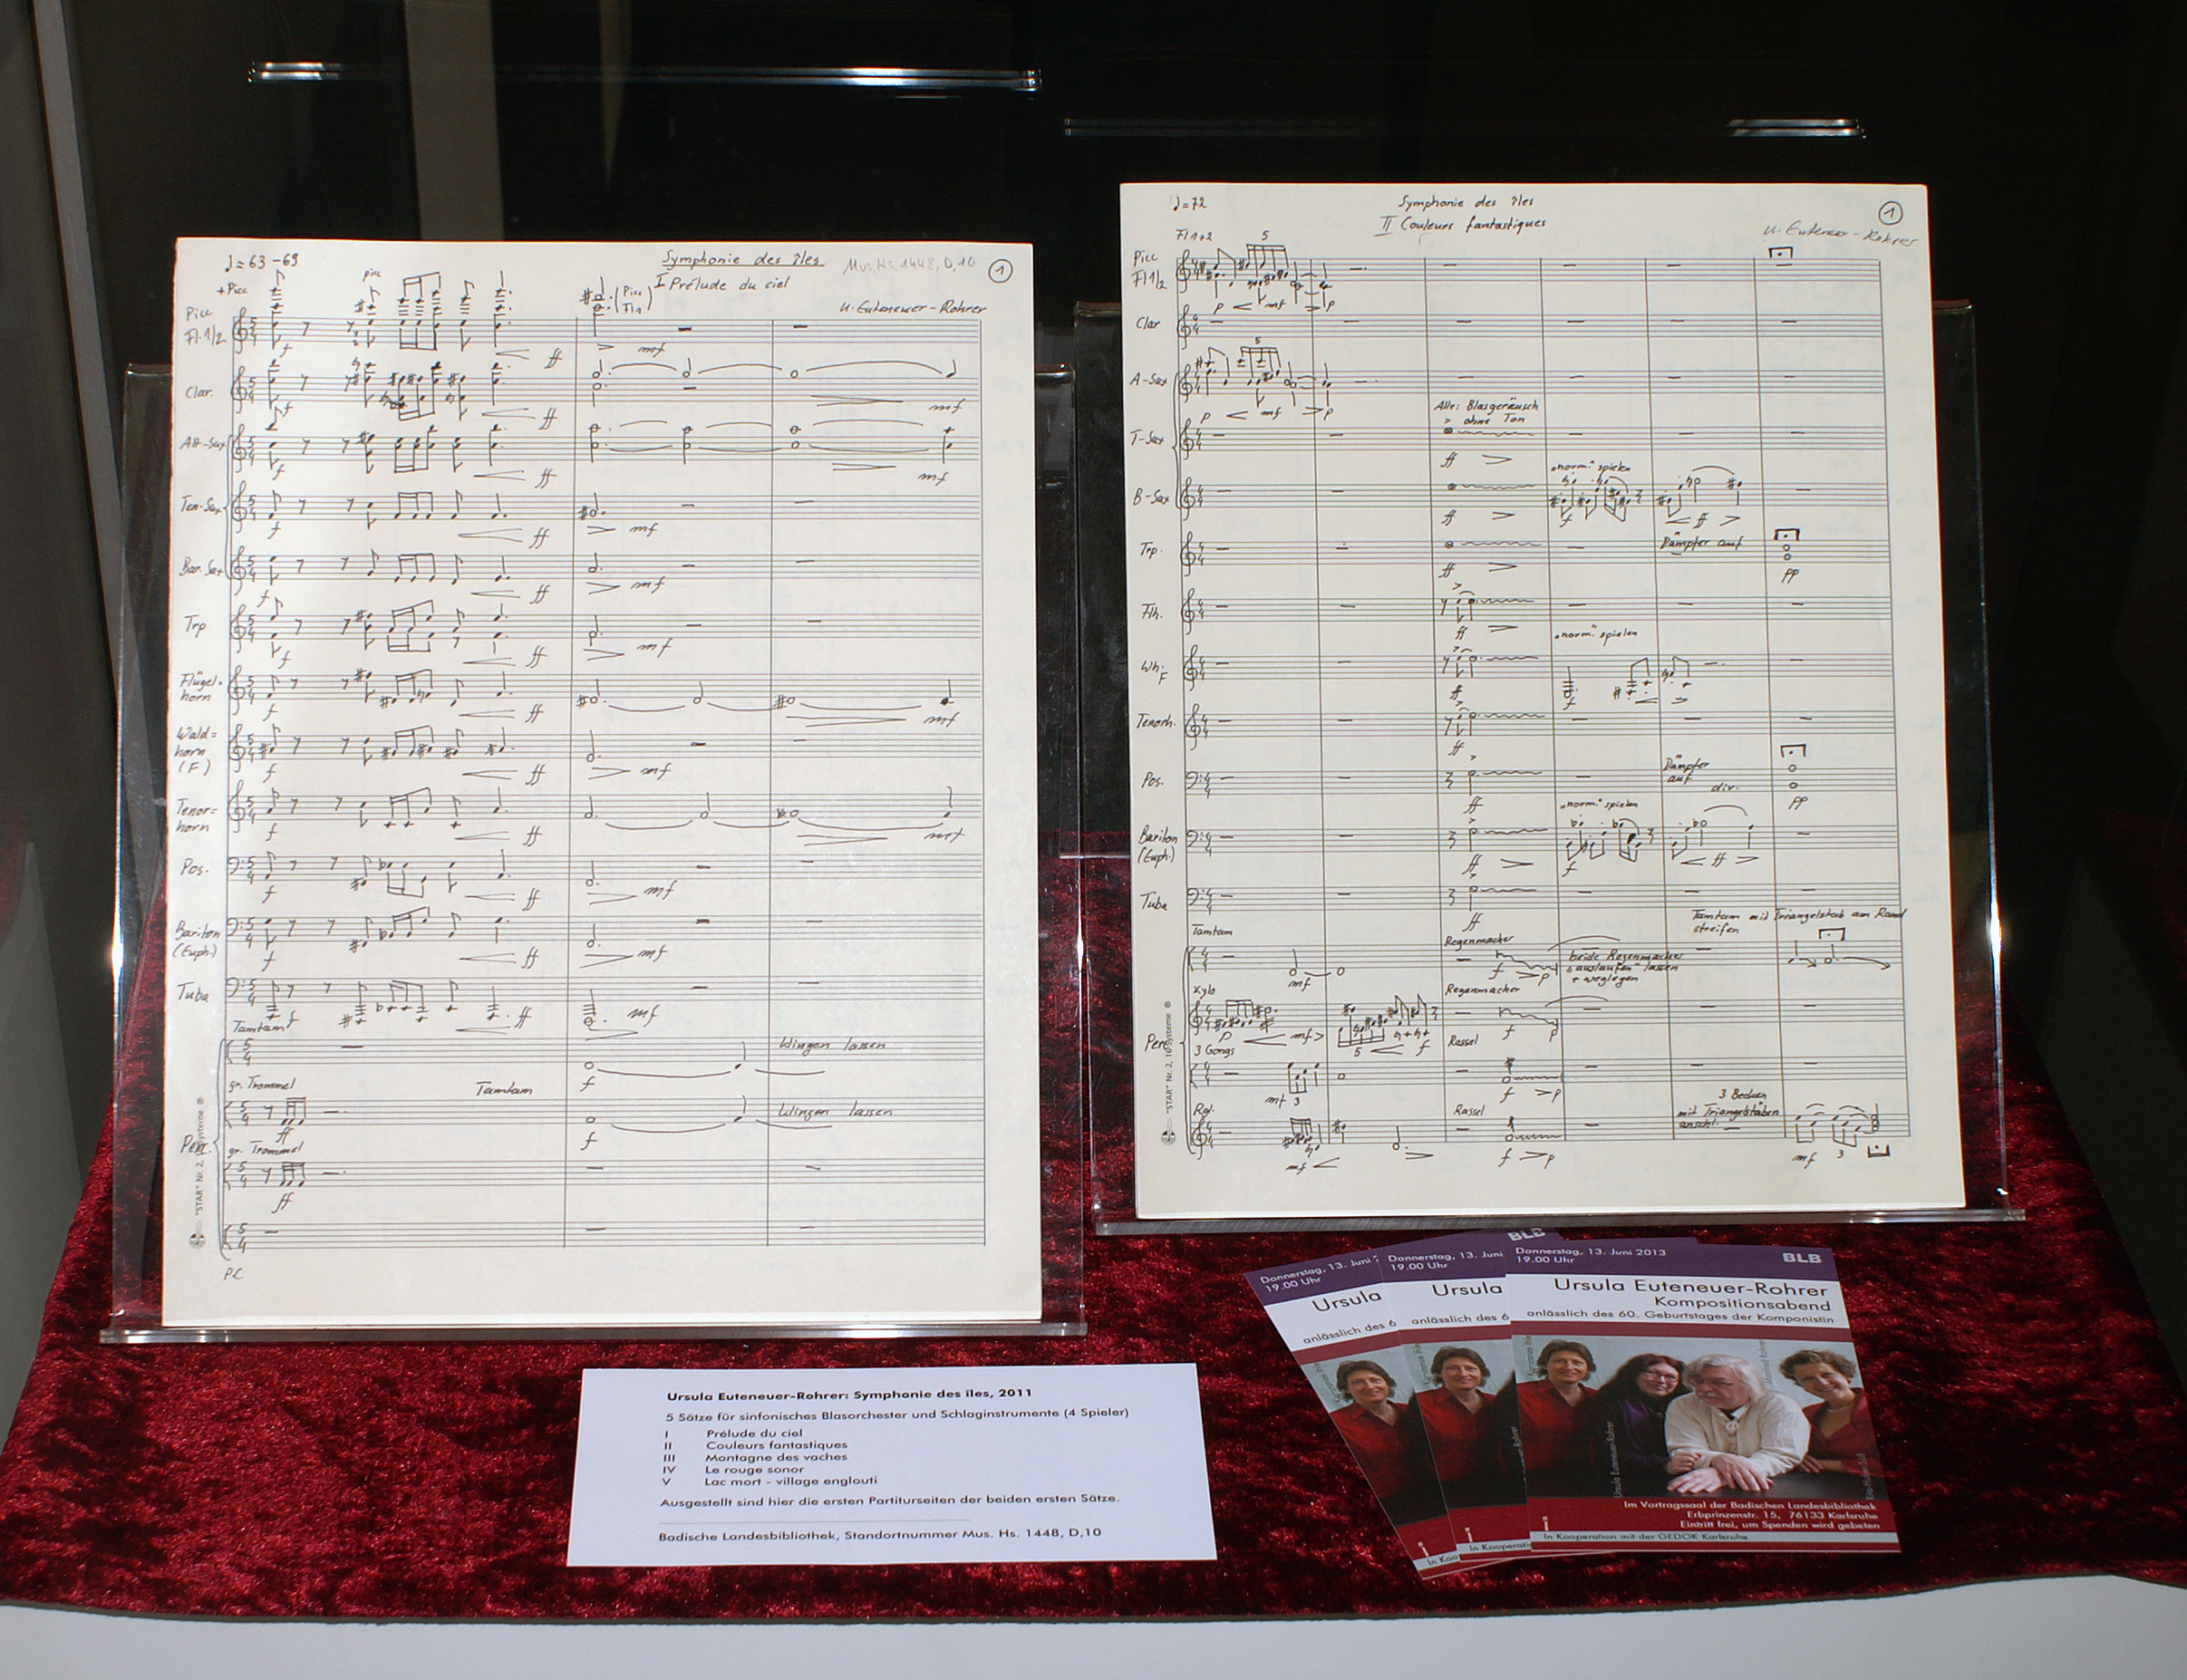 Ausgestellt sind die ersten Partiturseiten der ersten beiden Sätze von Euteneuer-Rohrer, sowie ein paar Flyer zu einem Konzert.